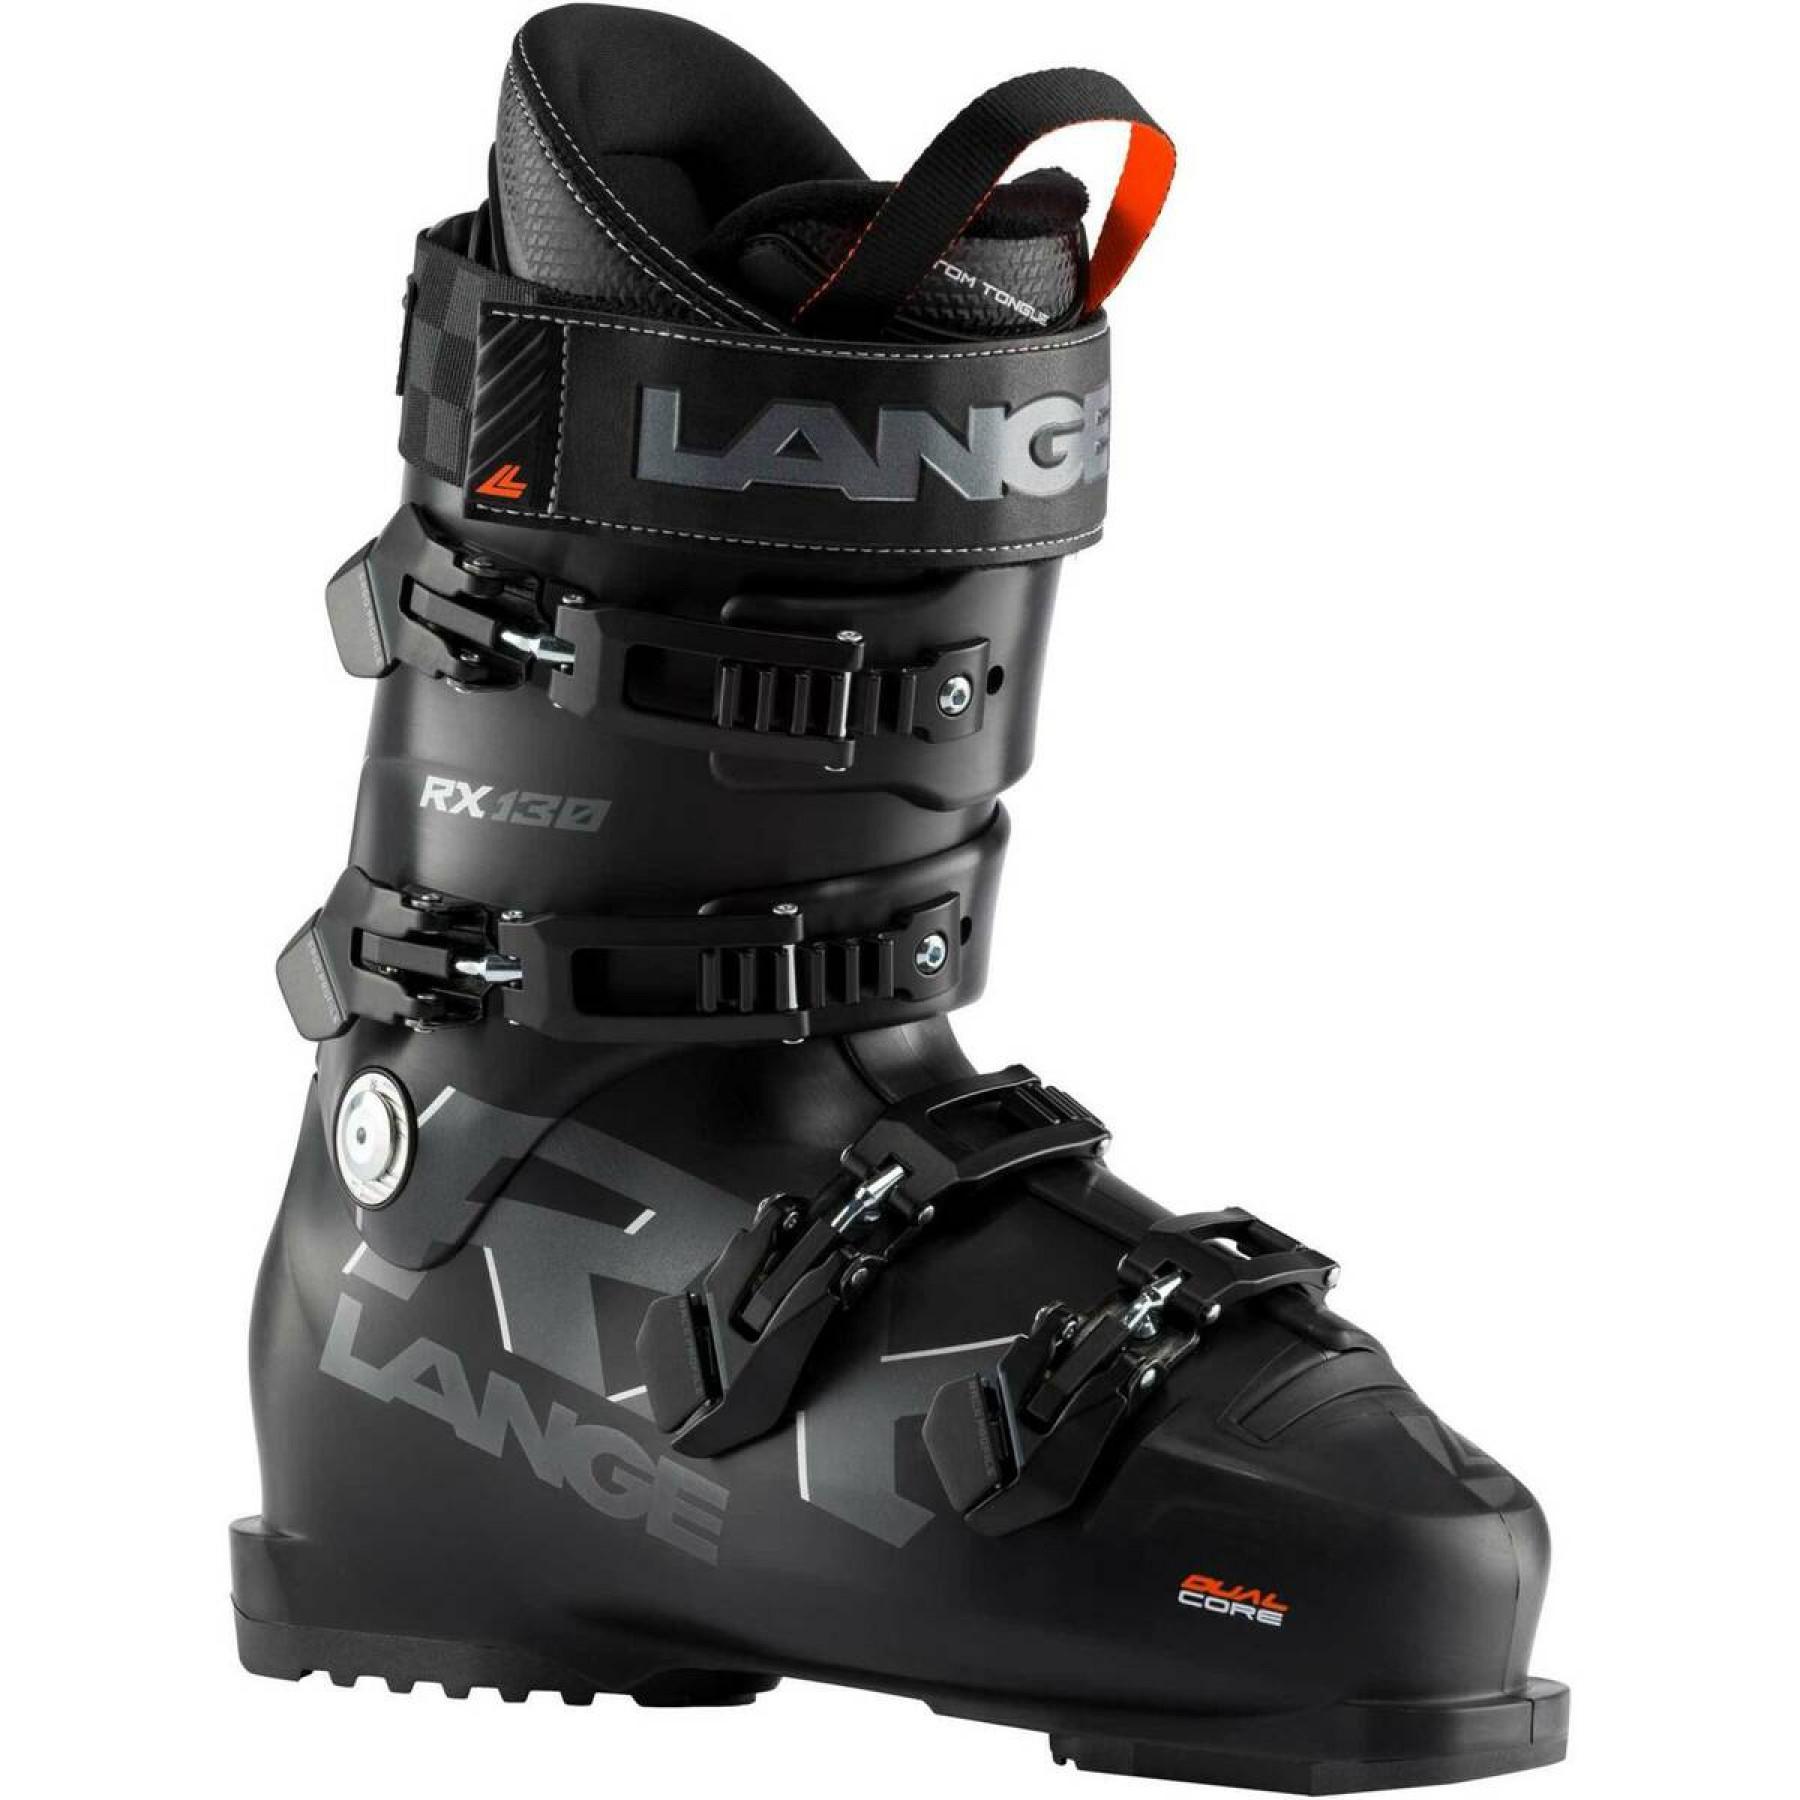 Ski boots Lange rx 130